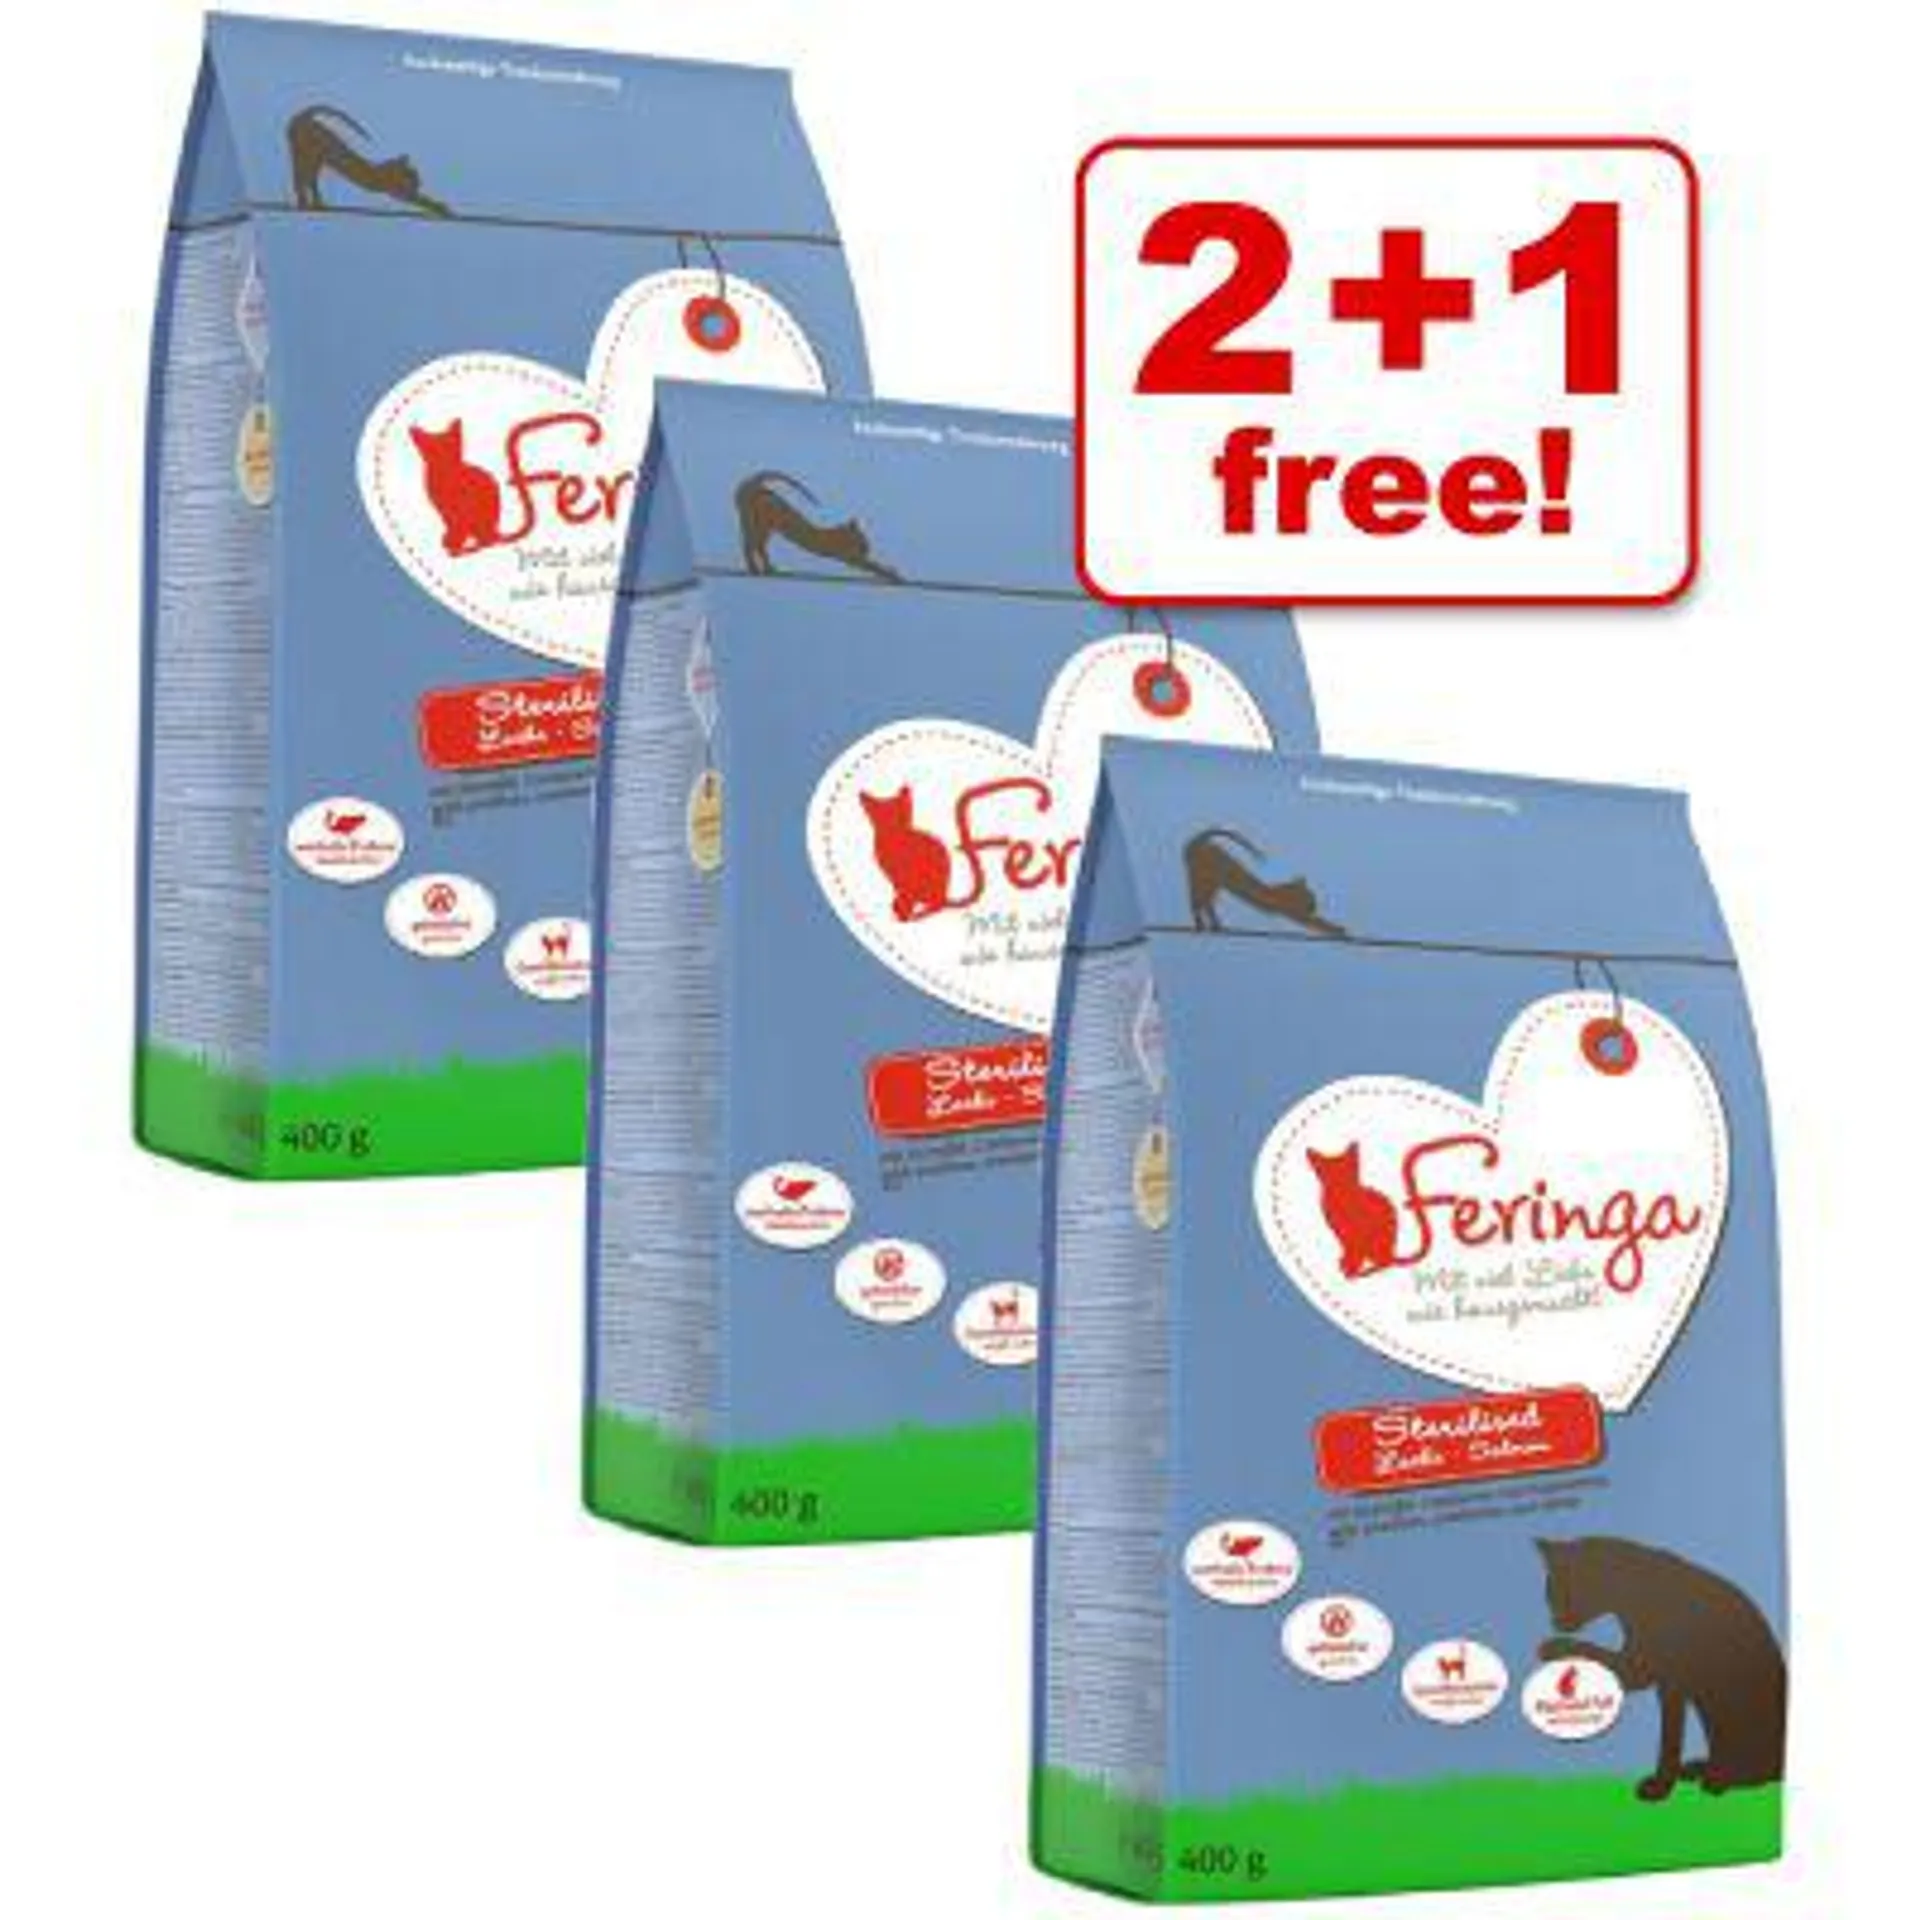 3 x 400g Feringa Adult Sterilised Dry Cat Food - 2 + 1 Free!*